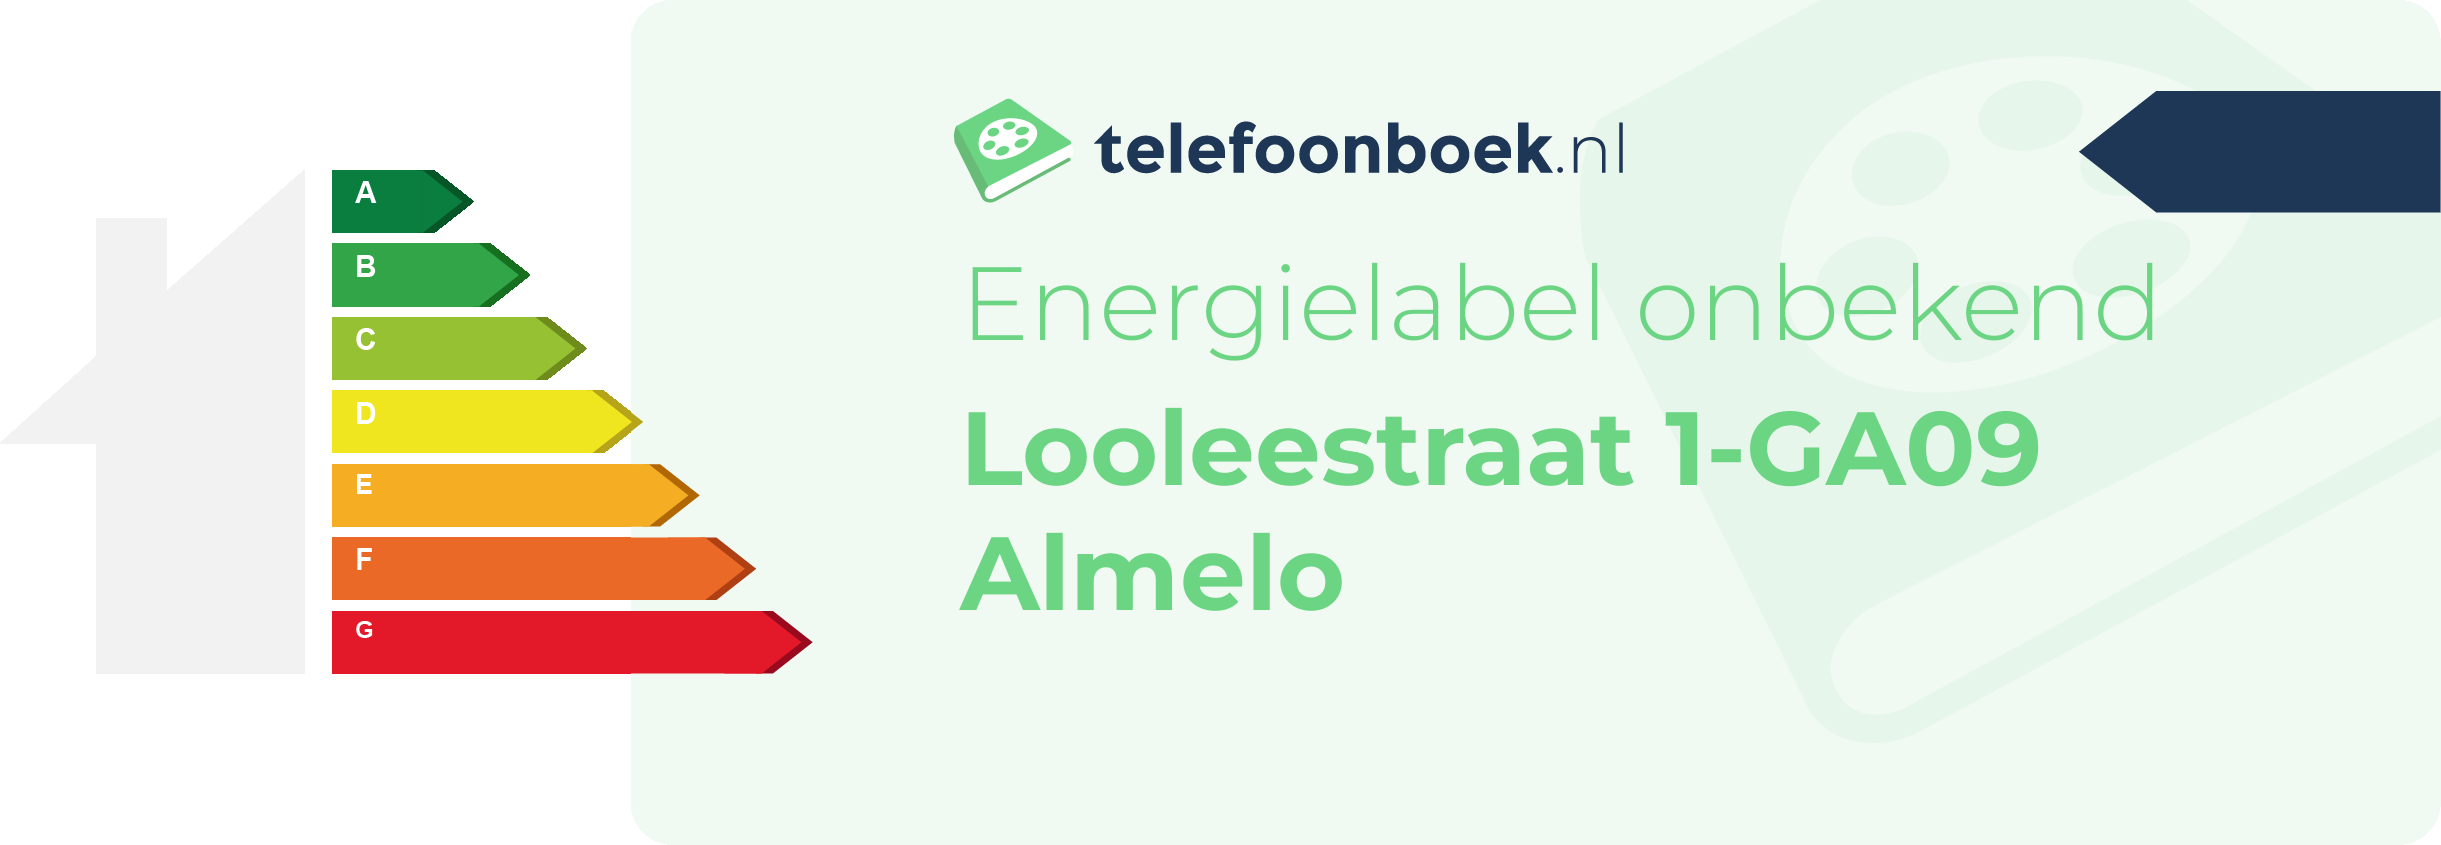 Energielabel Looleestraat 1-GA09 Almelo